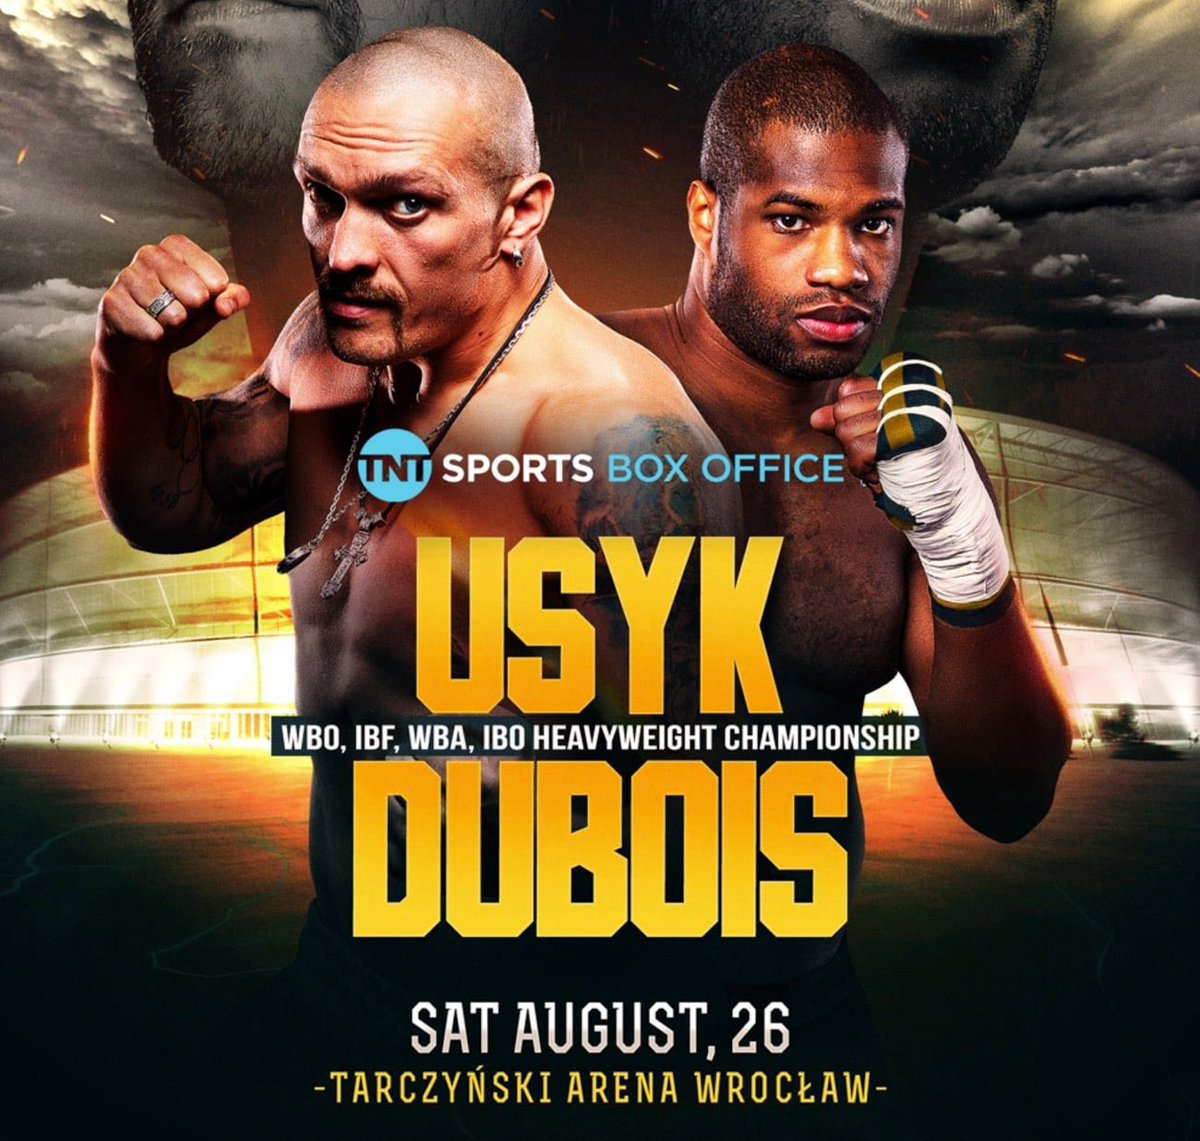 💥Este sábado tenemos veladón, con el campeonato mundial del peso pesado entre Usyk y Dubois. La velada se verá en directo por la APP de Eurosport y comenzaremos a las 19h.